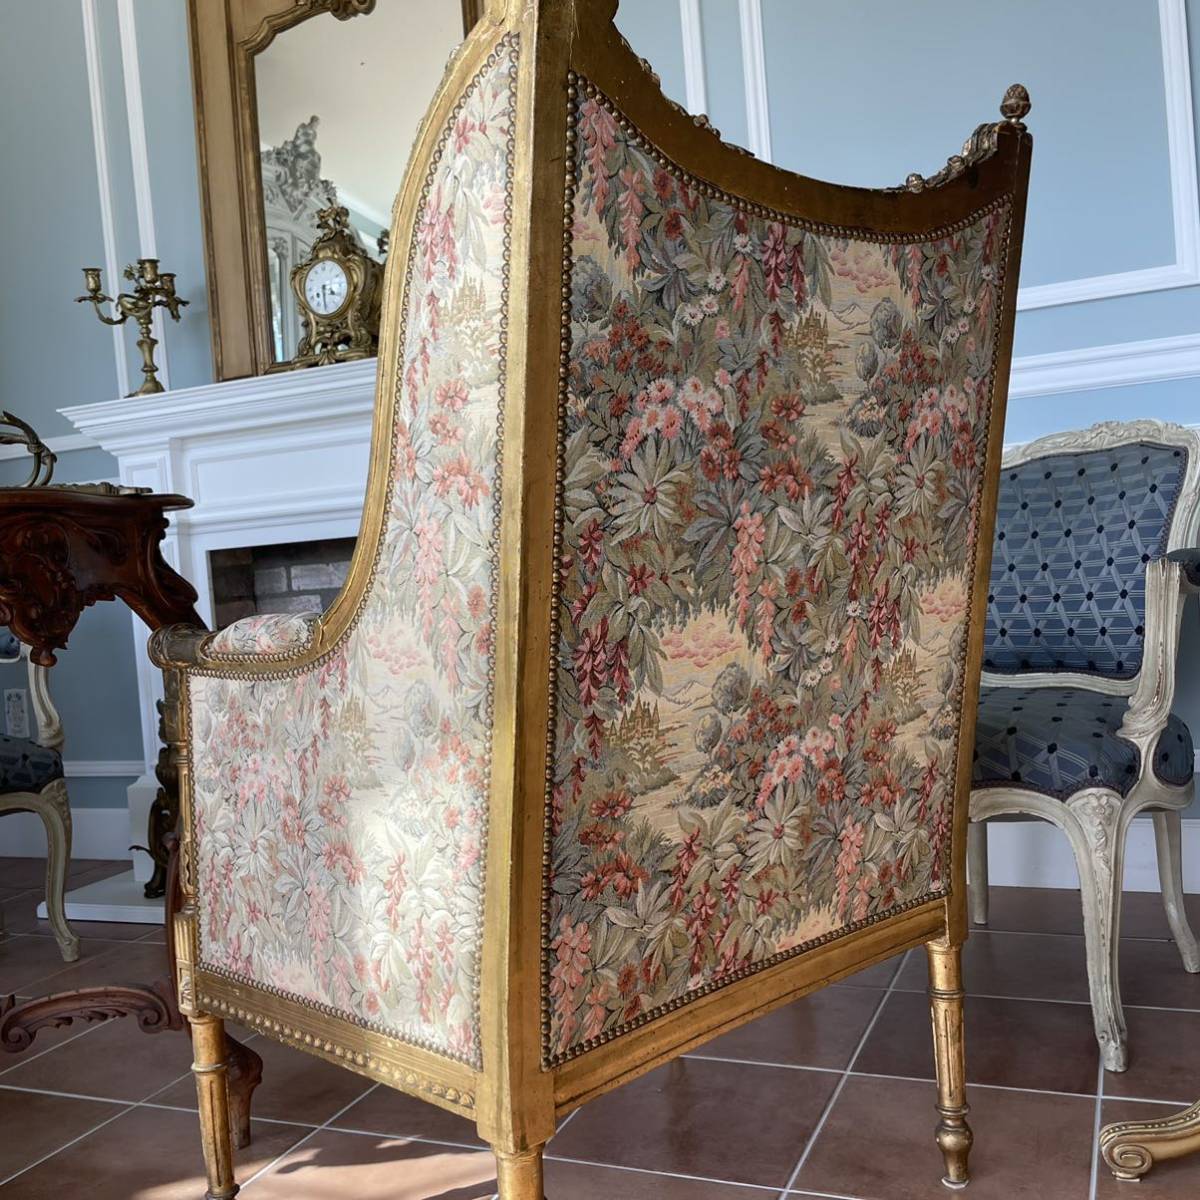  France antique salon sofa Louis 16. form antique furniture antique chair antique sofa chair arm chair 